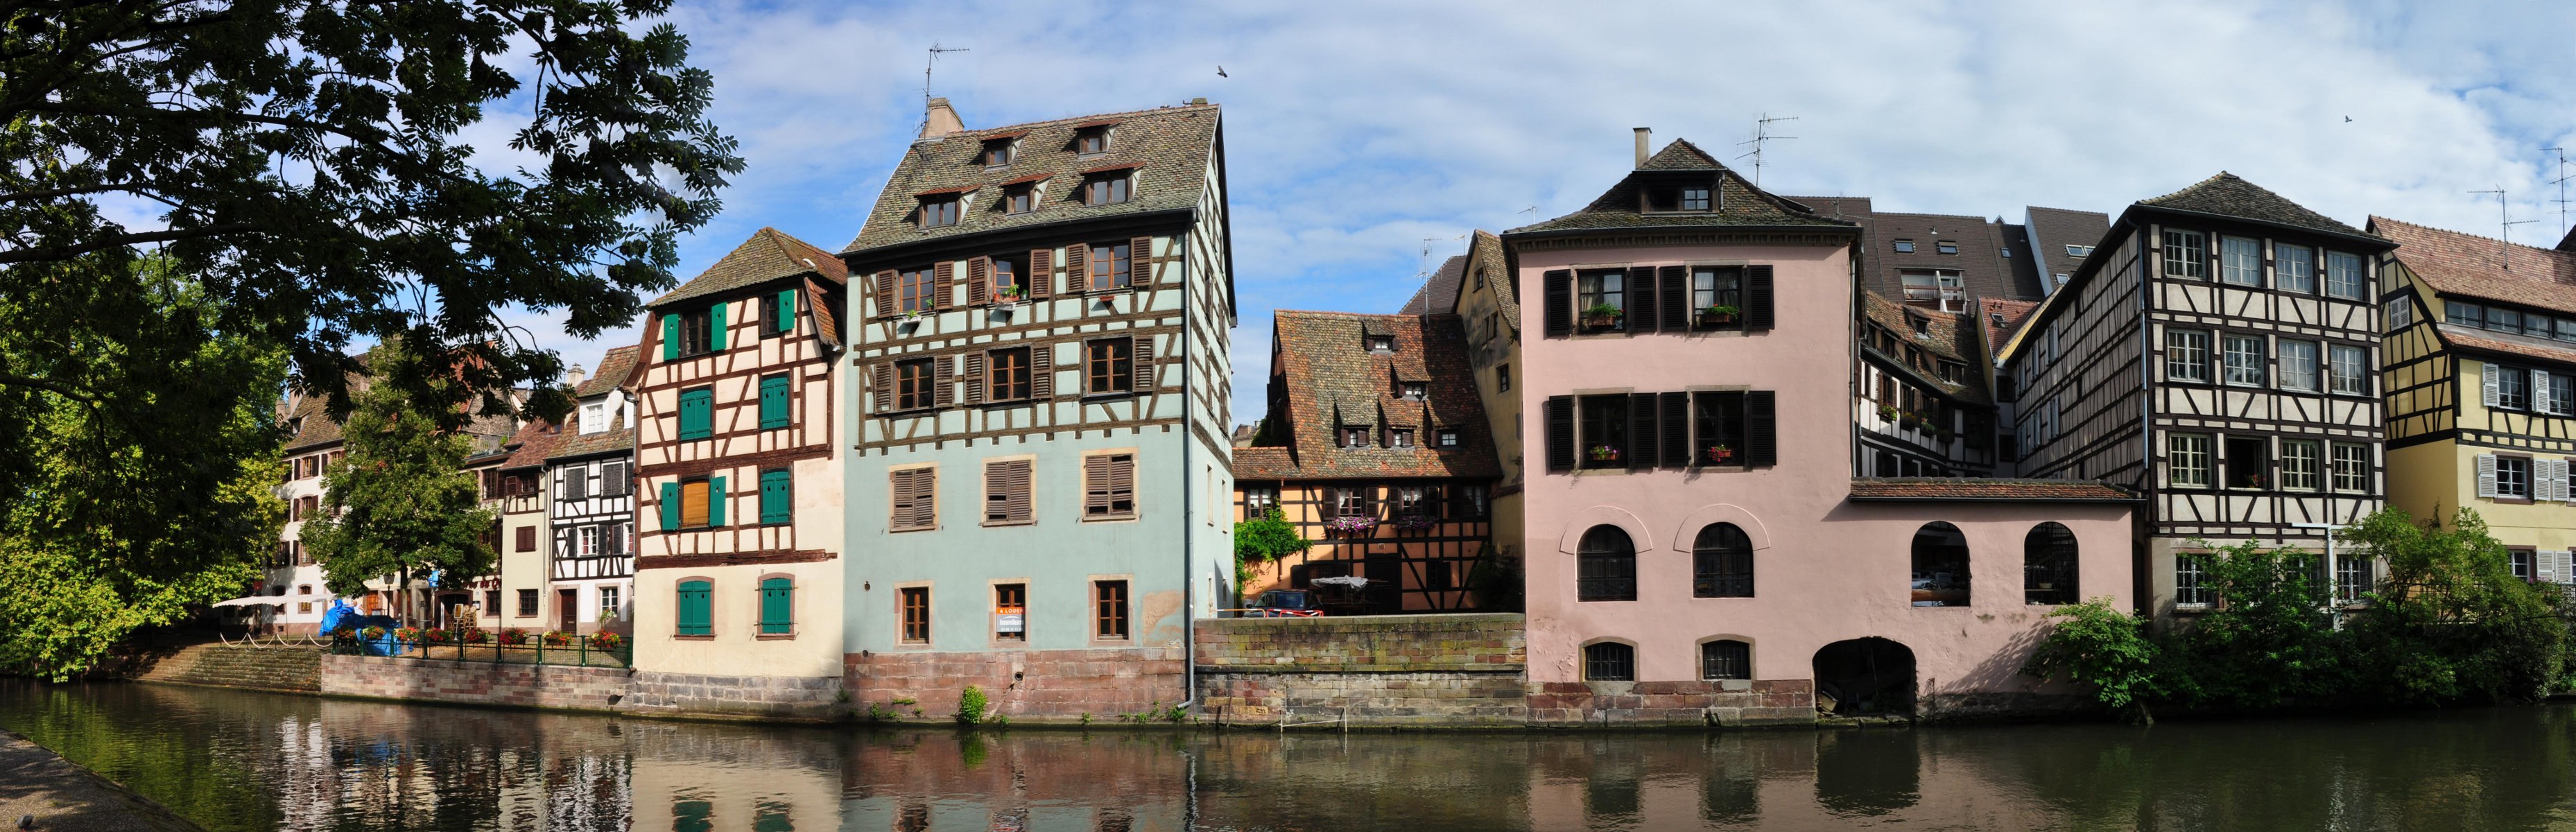 The Little France - Strasbourg - France.jpg